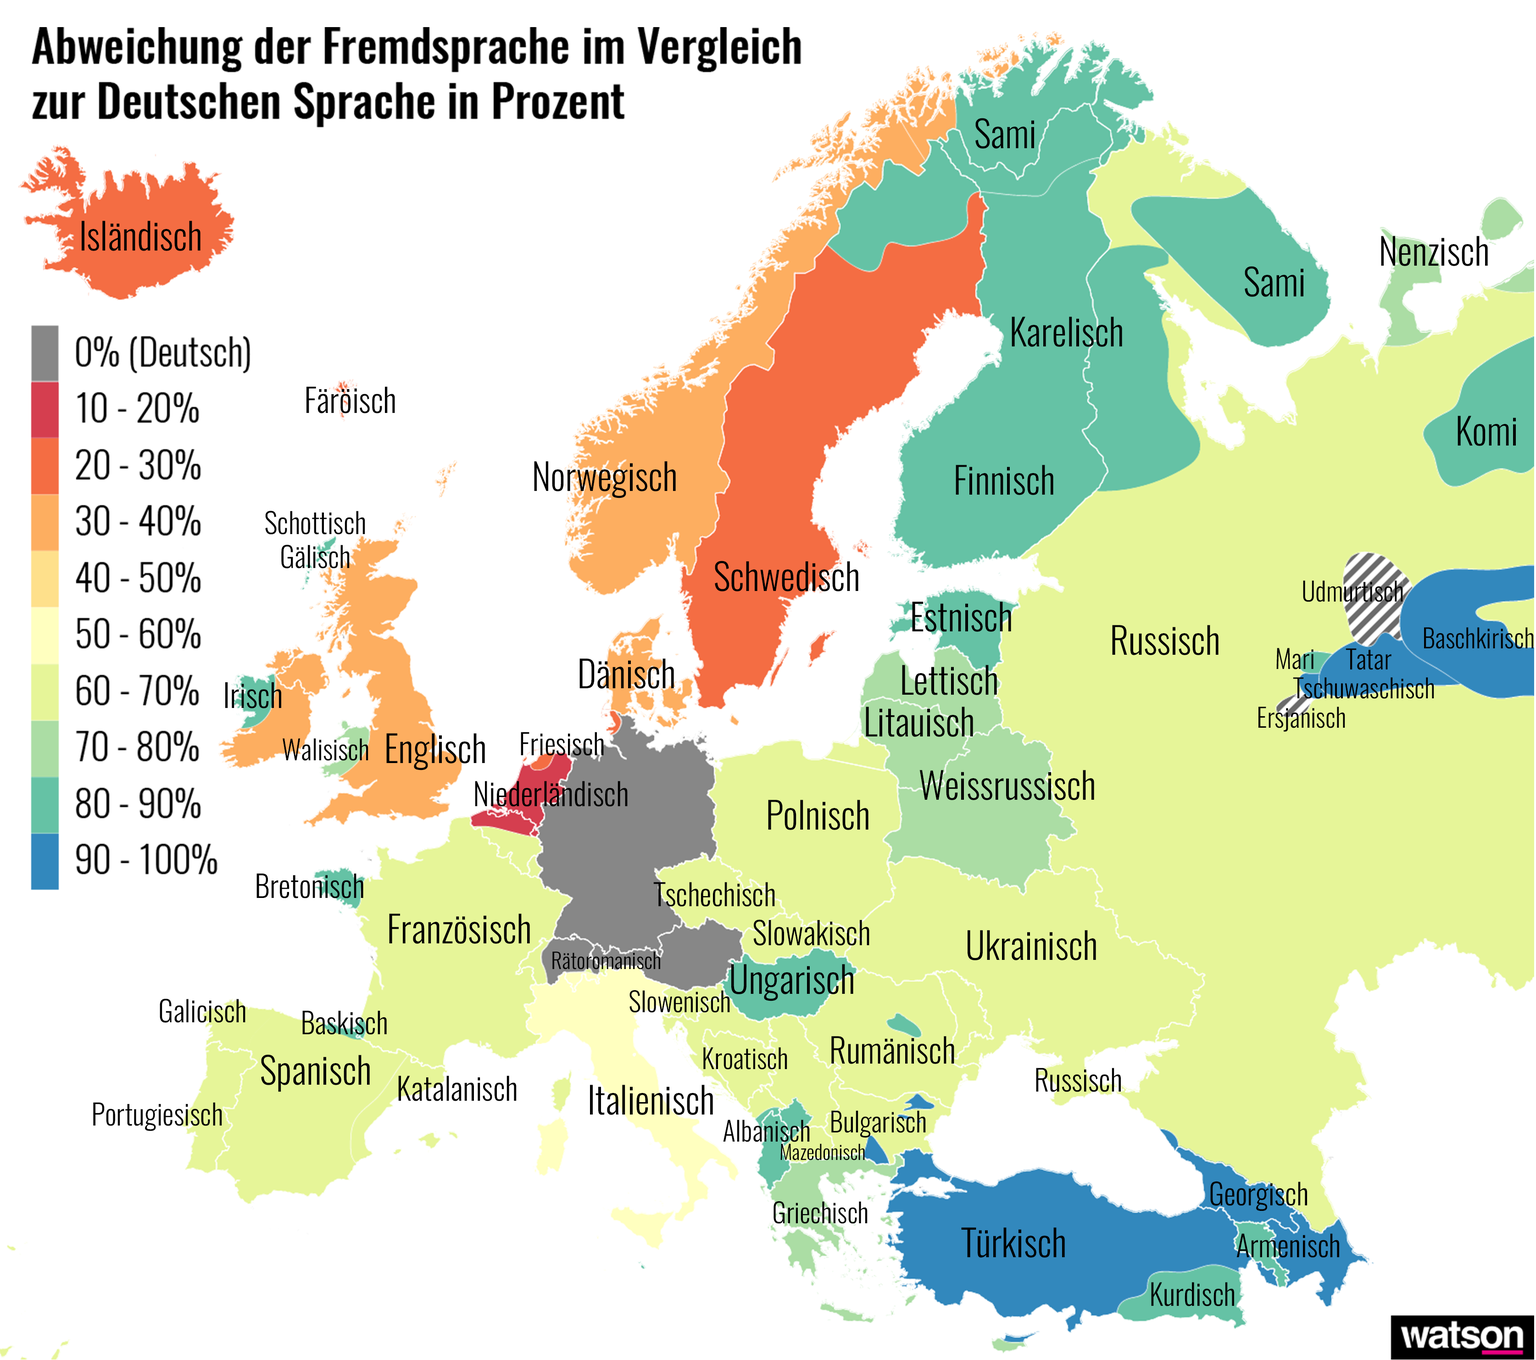 Abweichung der Fremdsprache im Vergleich zur Deutschen Sprache in Prozent Europa